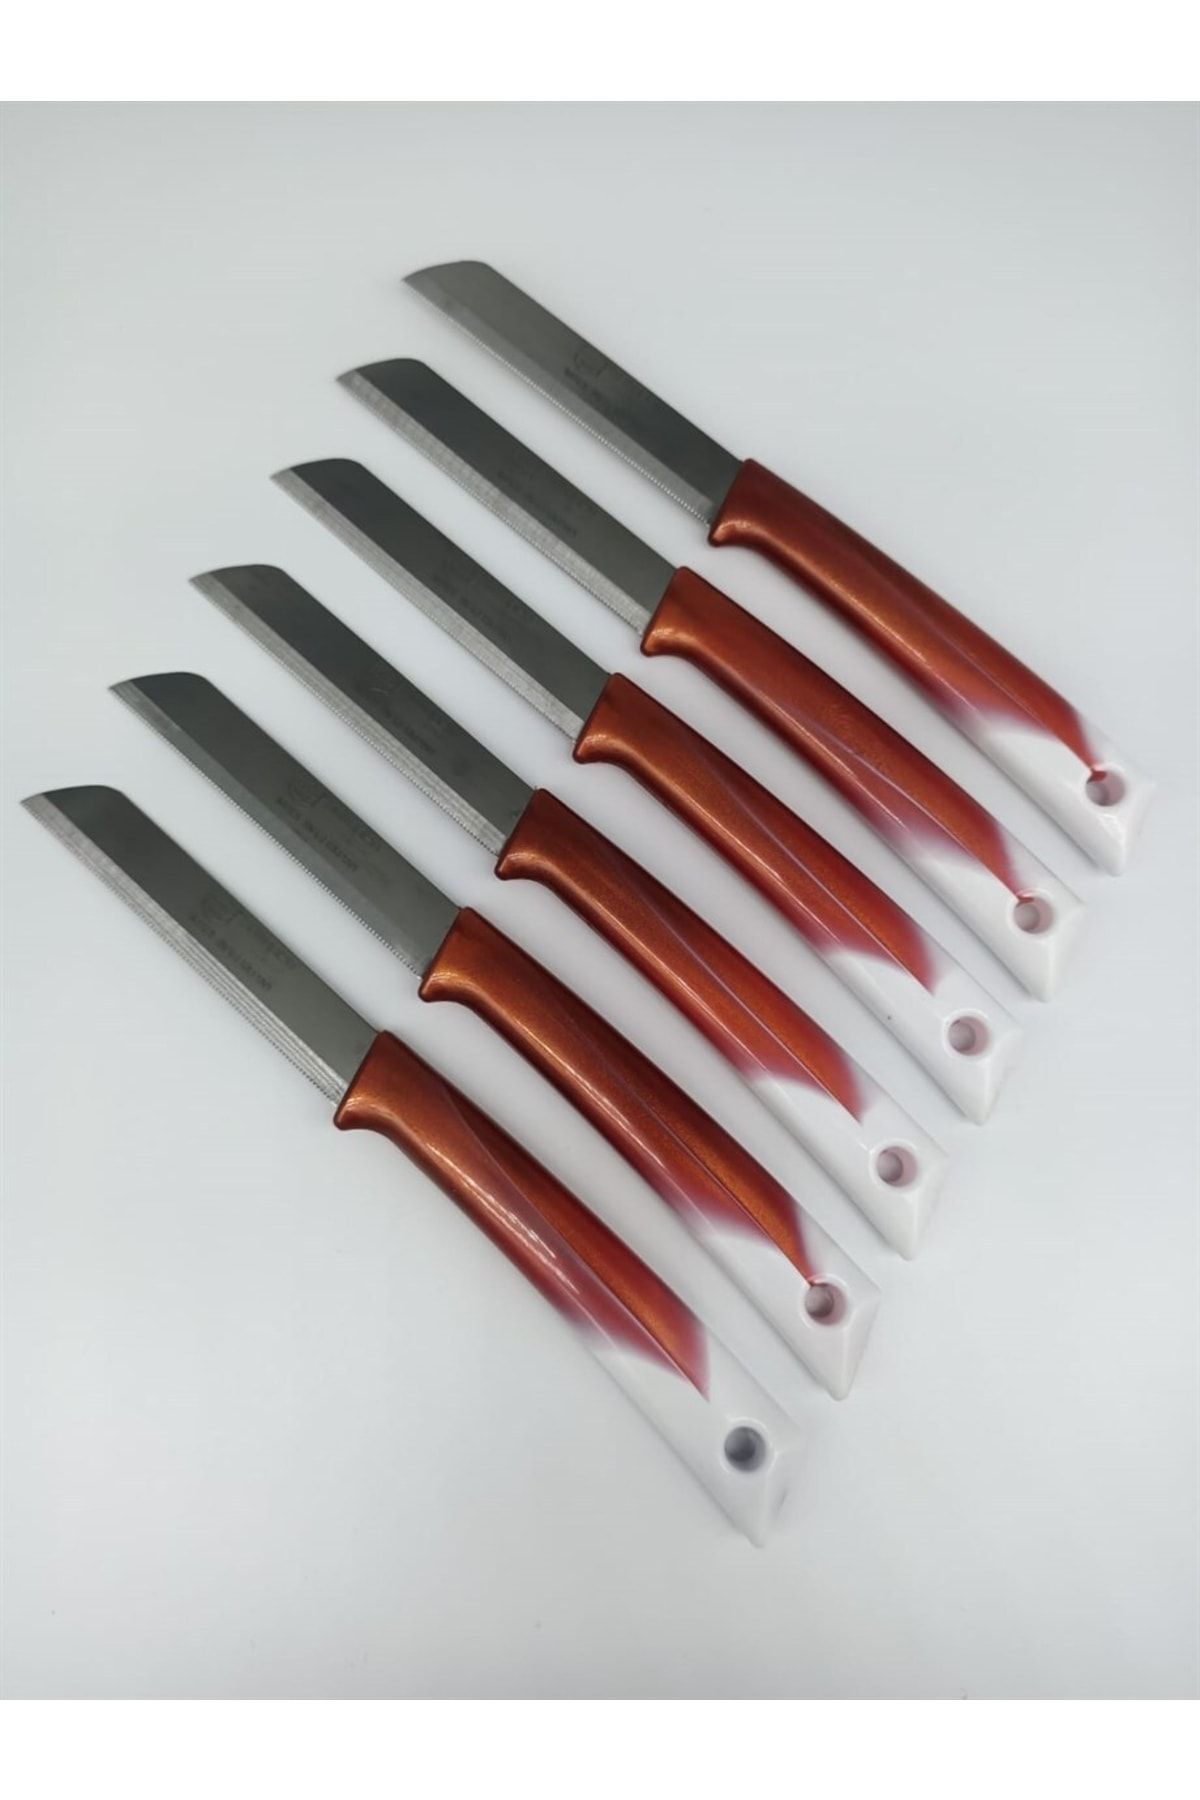 Solingen Meyve Bıçağı 6'lı Set Et Ekmek Sebze Meyve Soğan Börek Et Şef Bıçağı Kasap Bıçağı